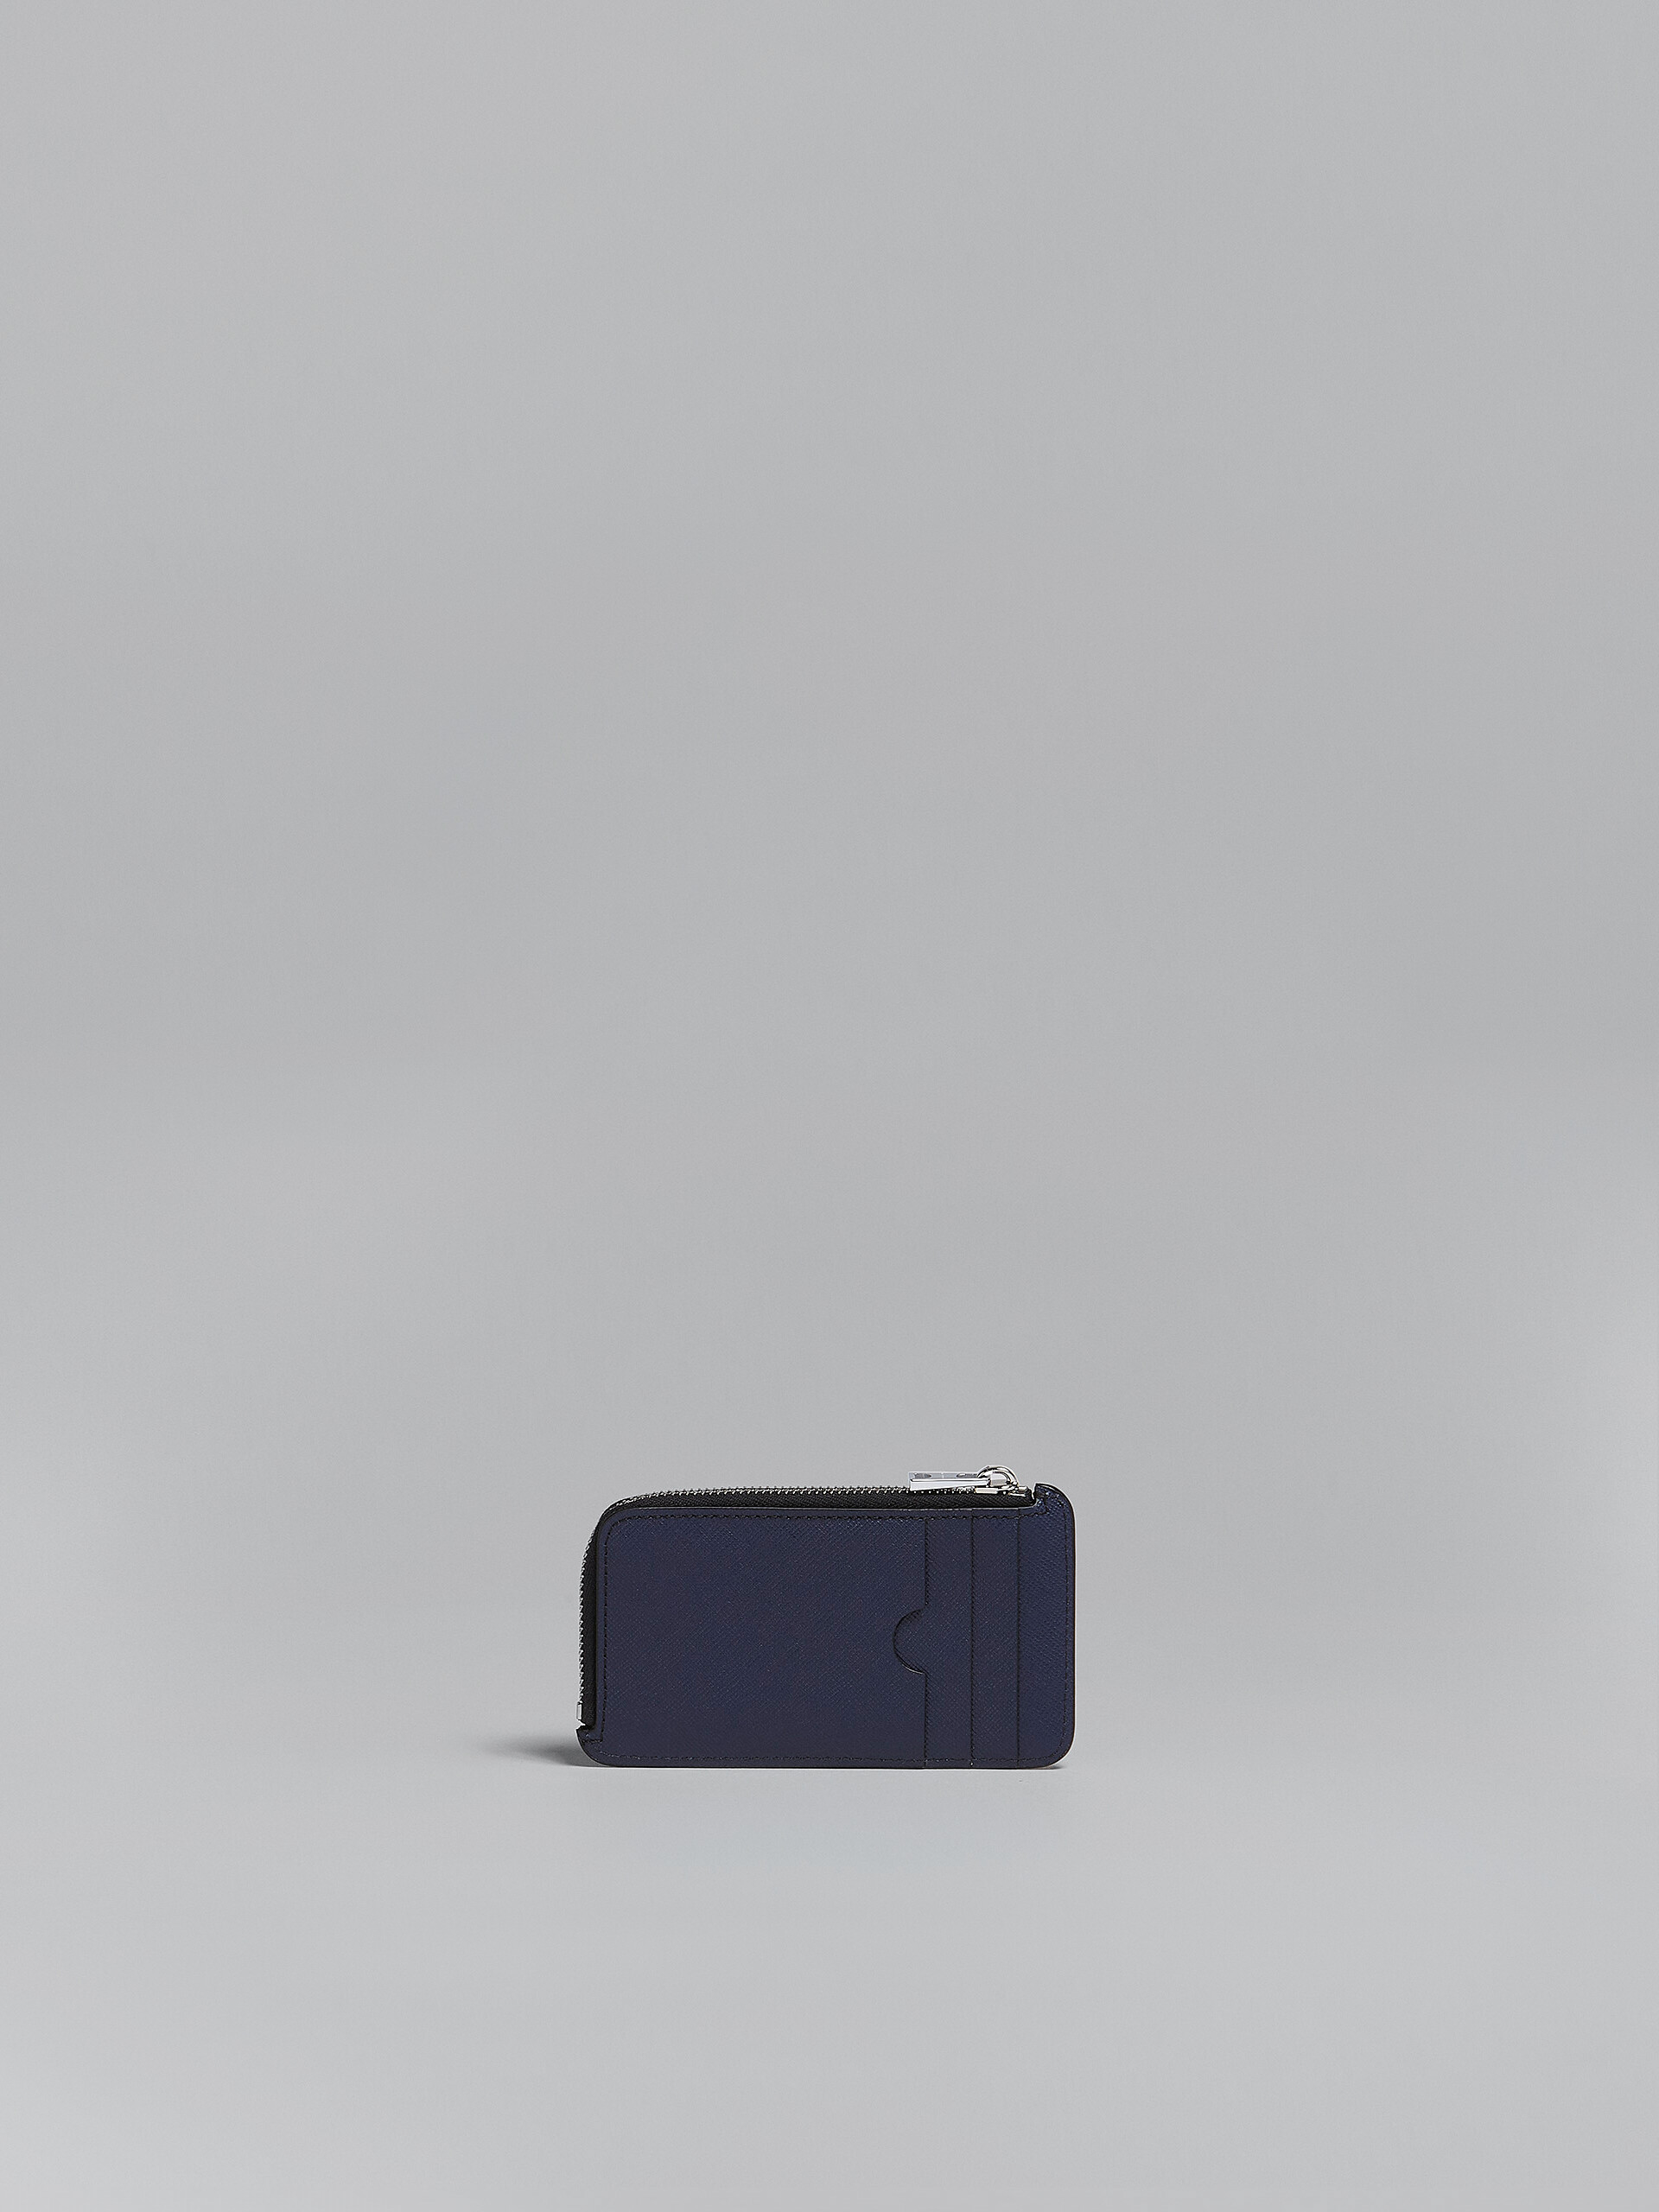 Portacarte con zip in pelle saffiano blu e nero - Portafogli - Image 3